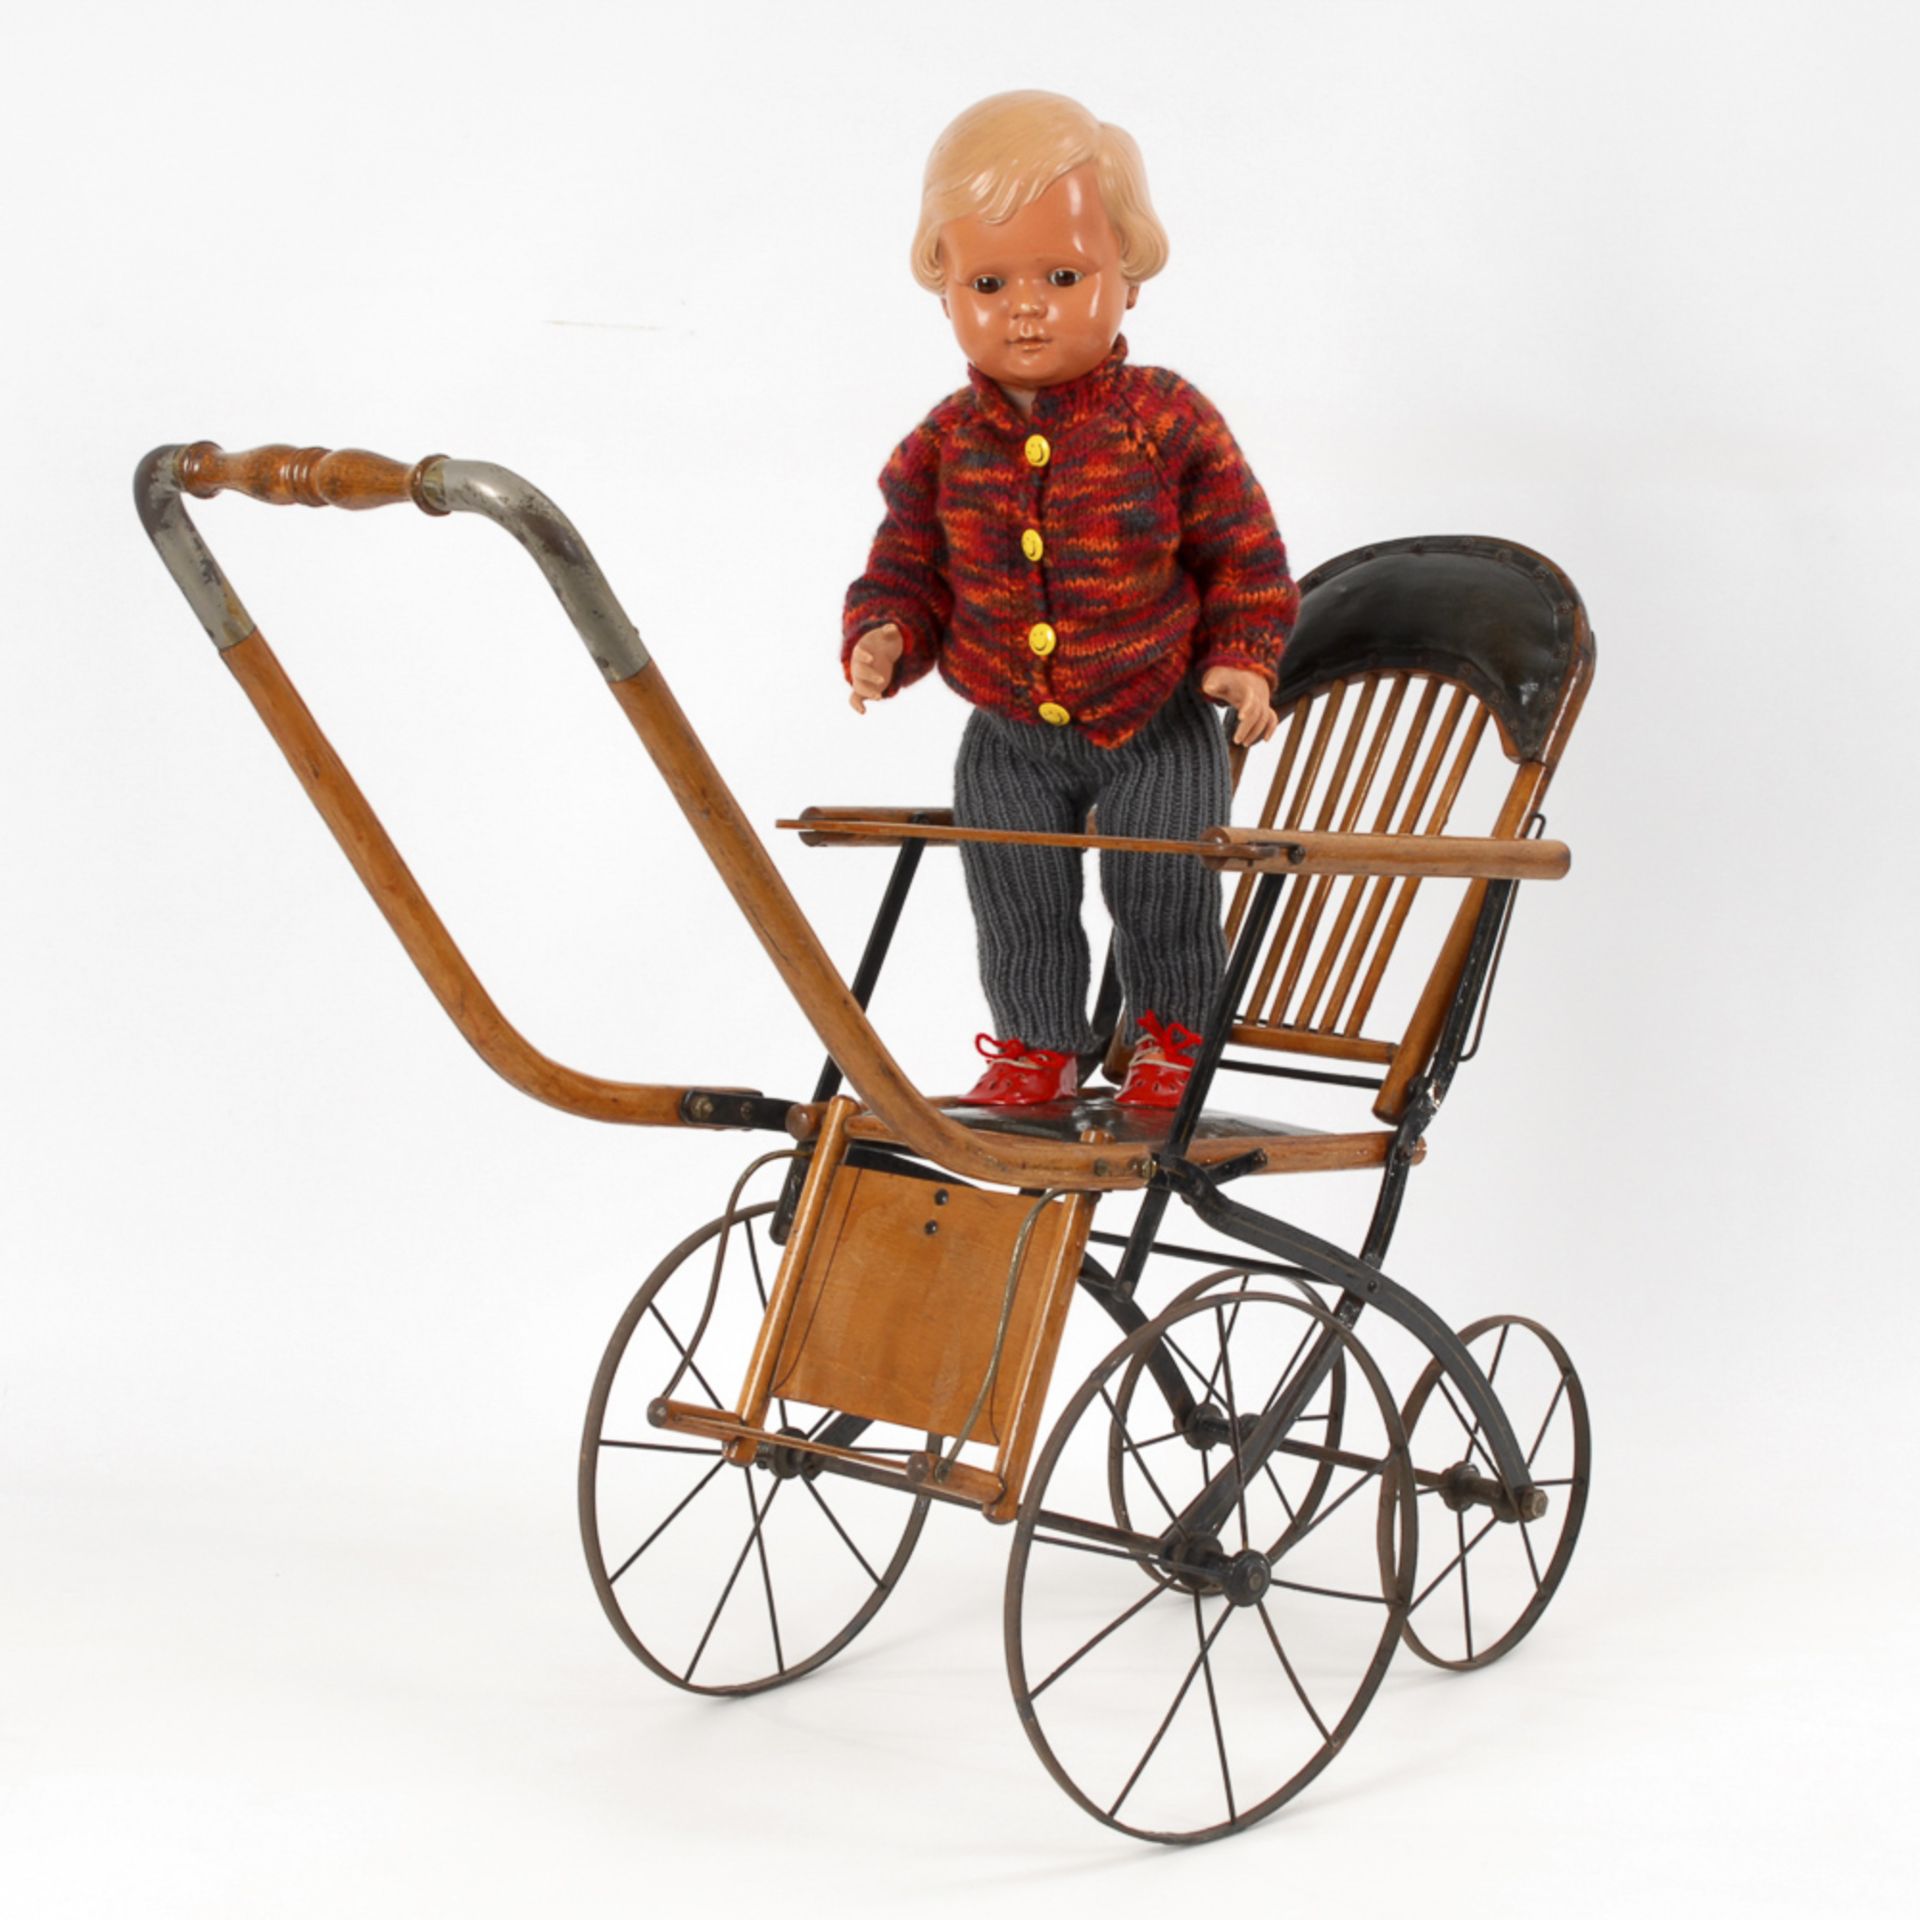 Puppenwagen mit Cellba-Puppe.1930er Jahre. Holz, Metall. H max. 63,5 cm, L der Puppe 50 cm.